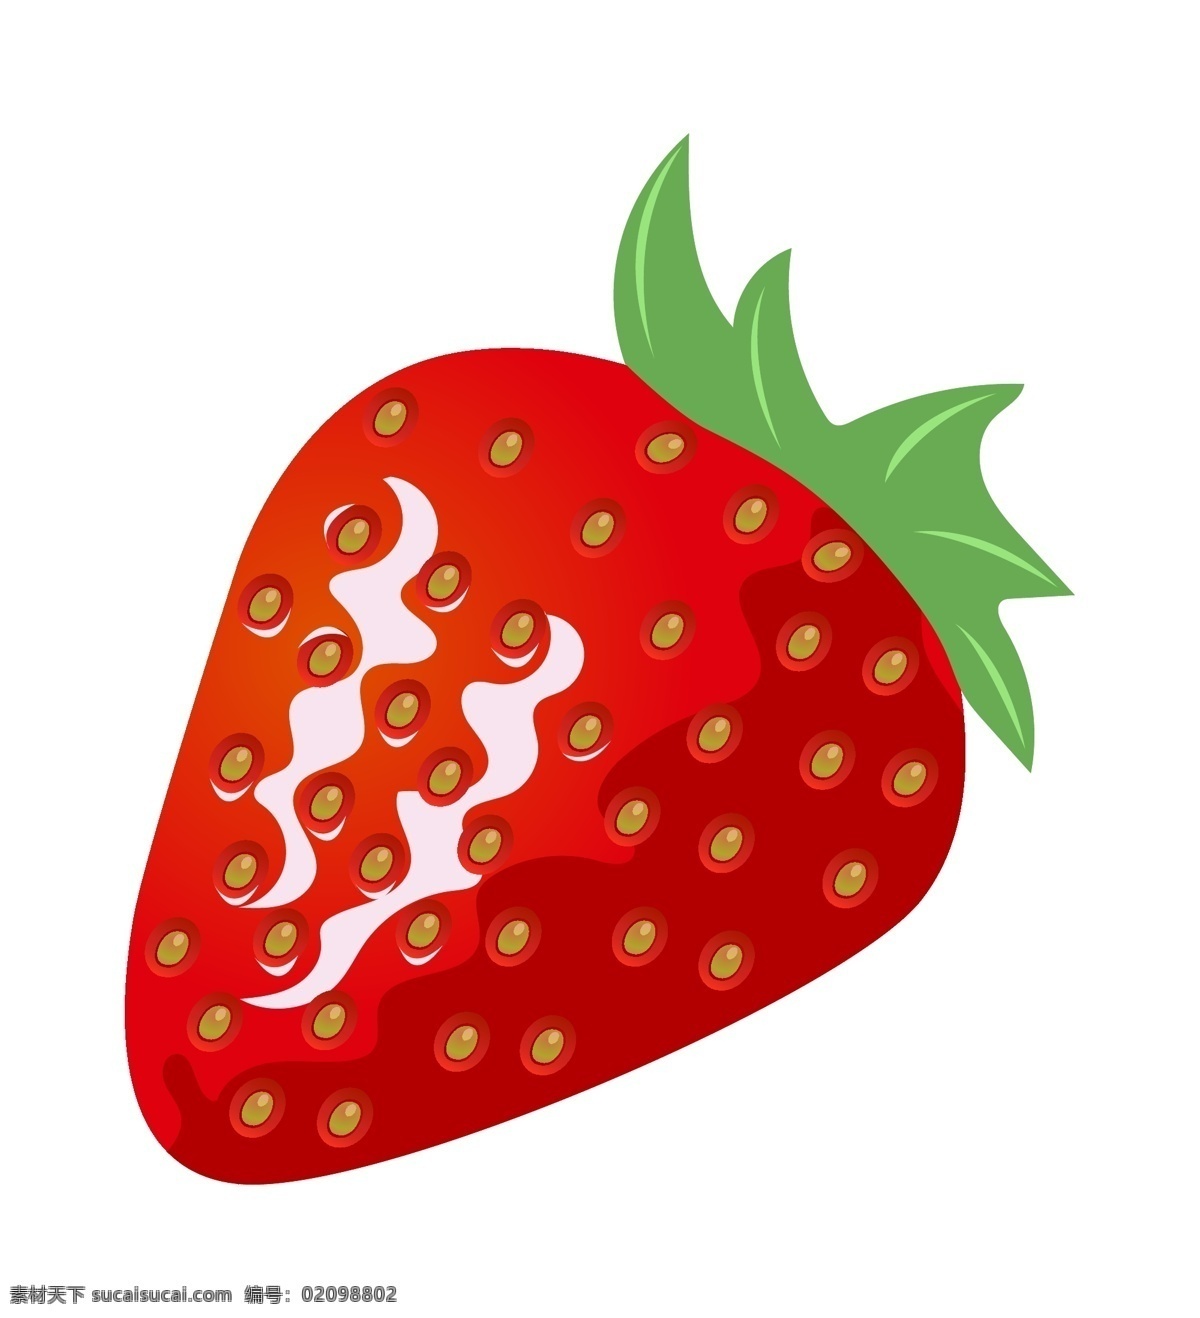 红色 手绘 草莓 插画 可口的草莓 仿真草莓 绿色的草莓籽 手绘草莓 卡通草莓 美食 食物 水果